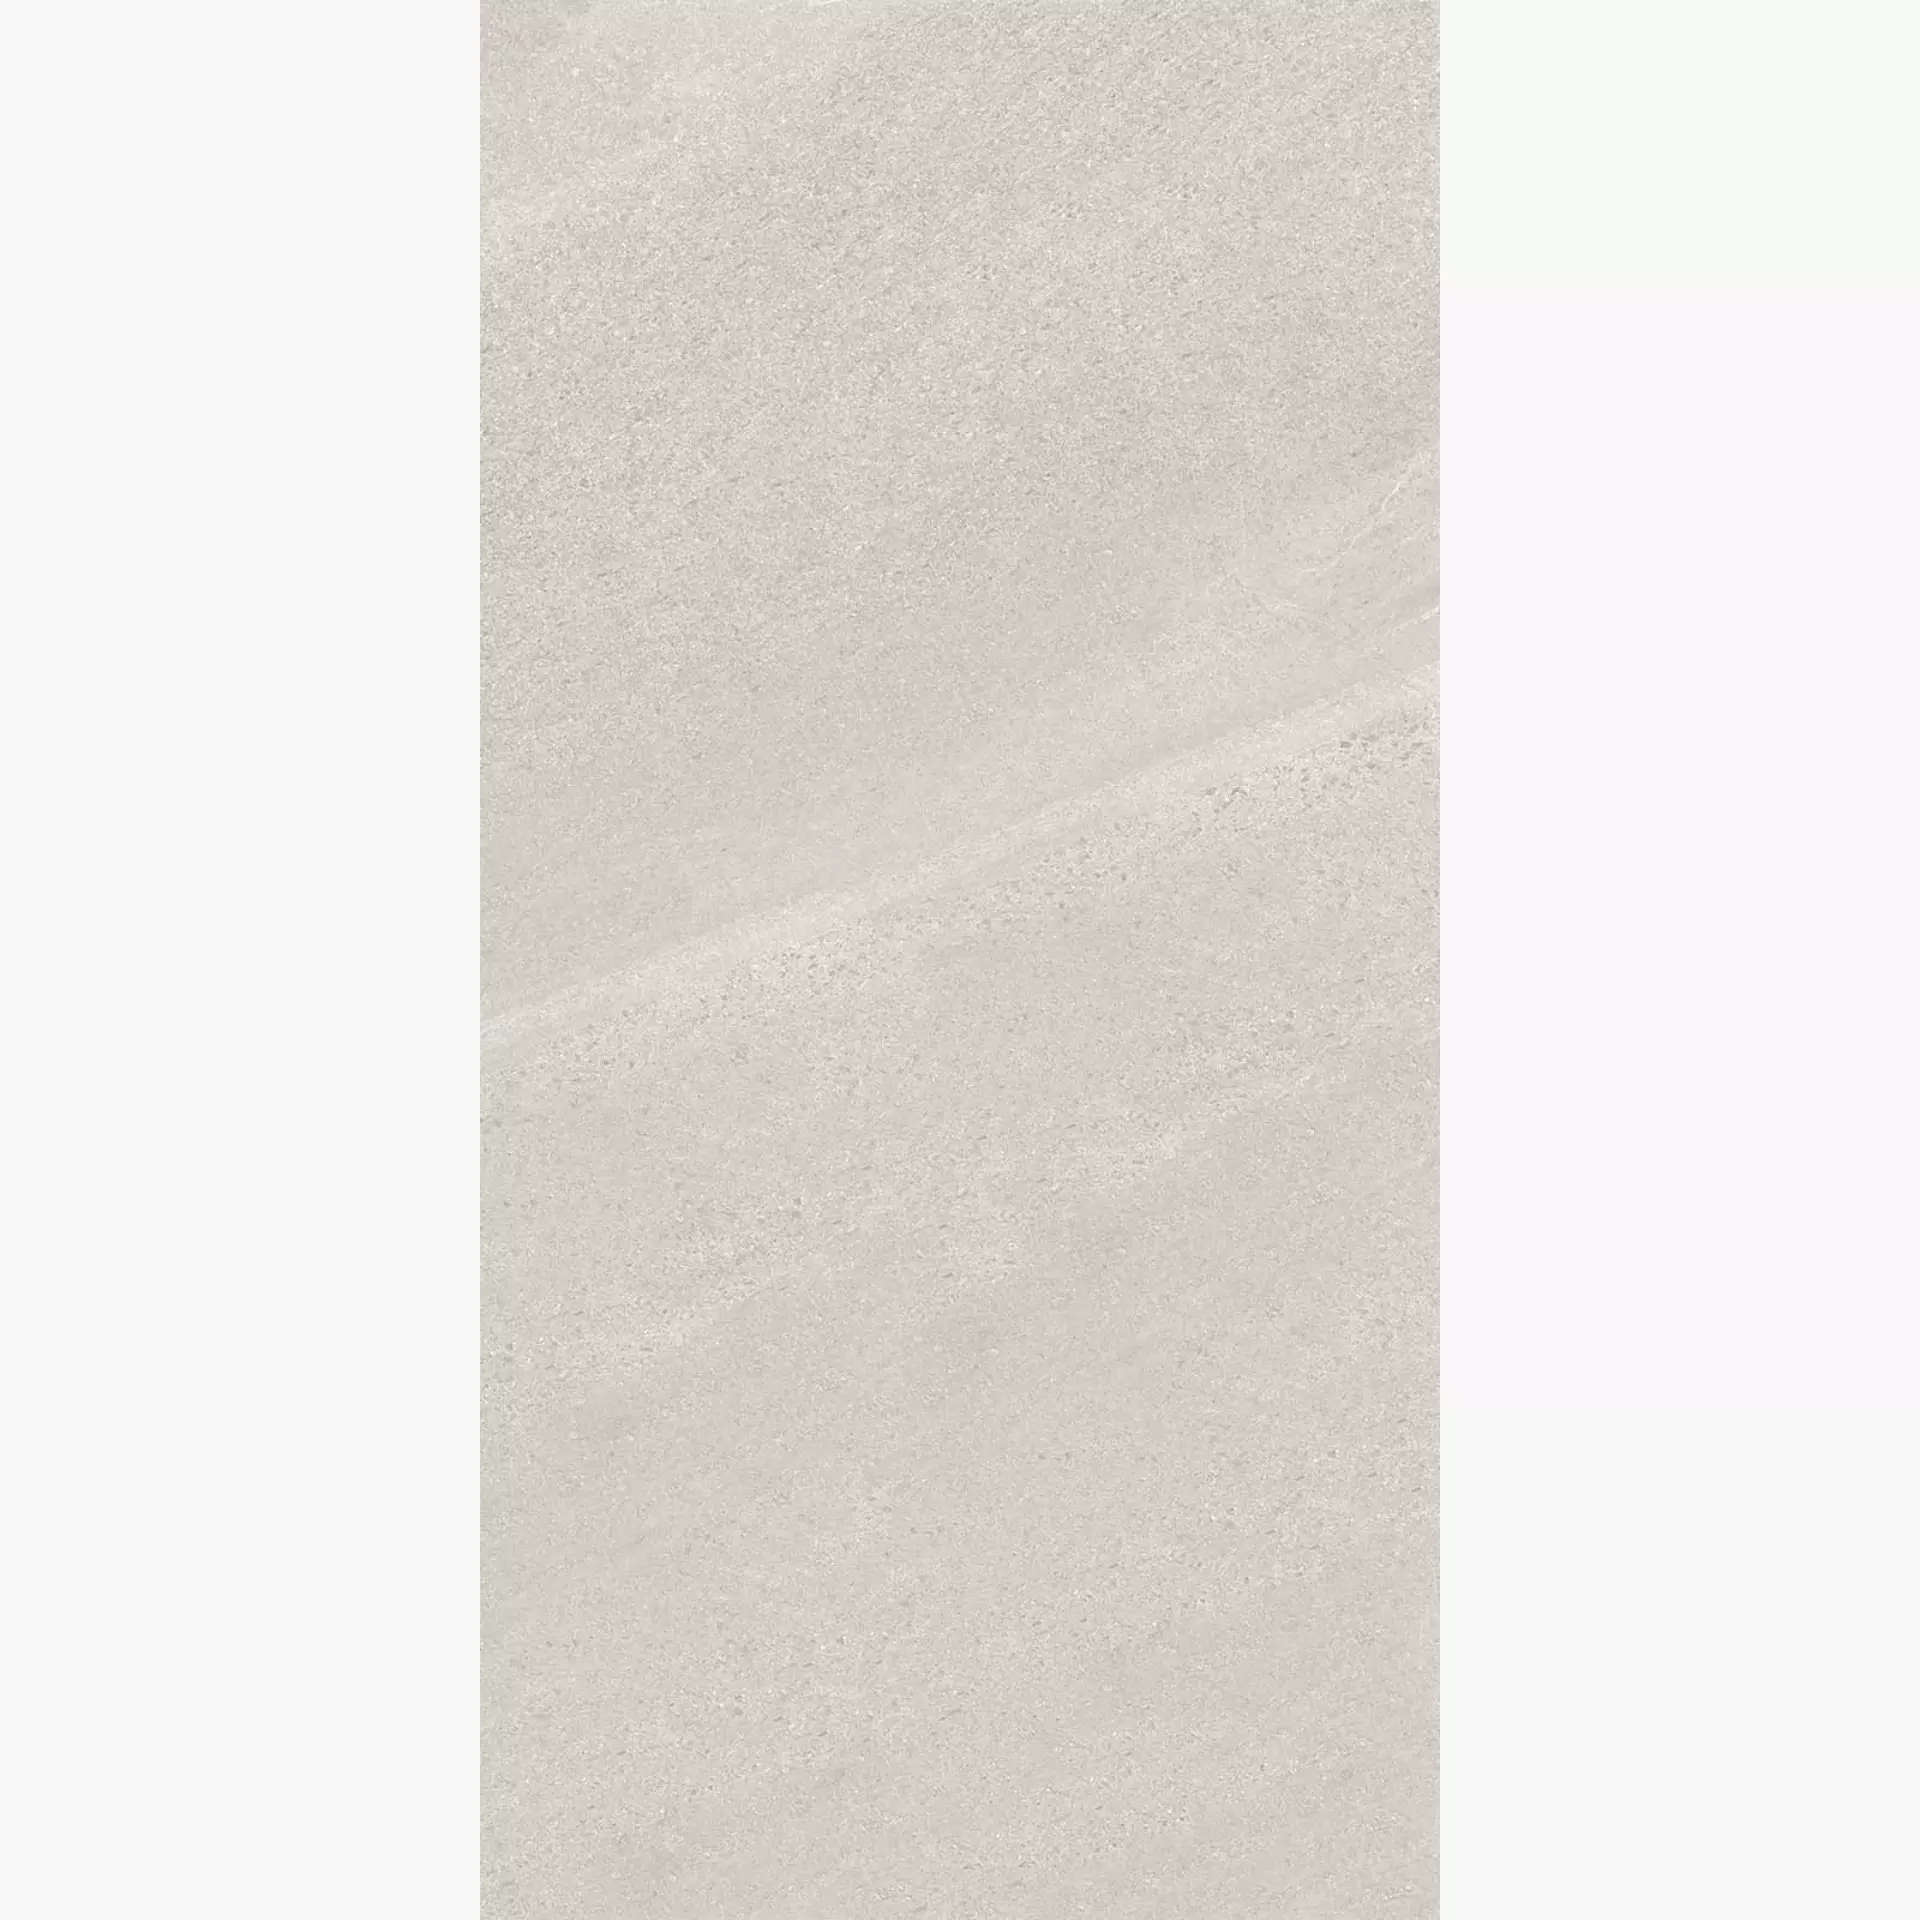 Keope Chorus White Naturale – Matt 434F3635 60x120cm rectified 9mm